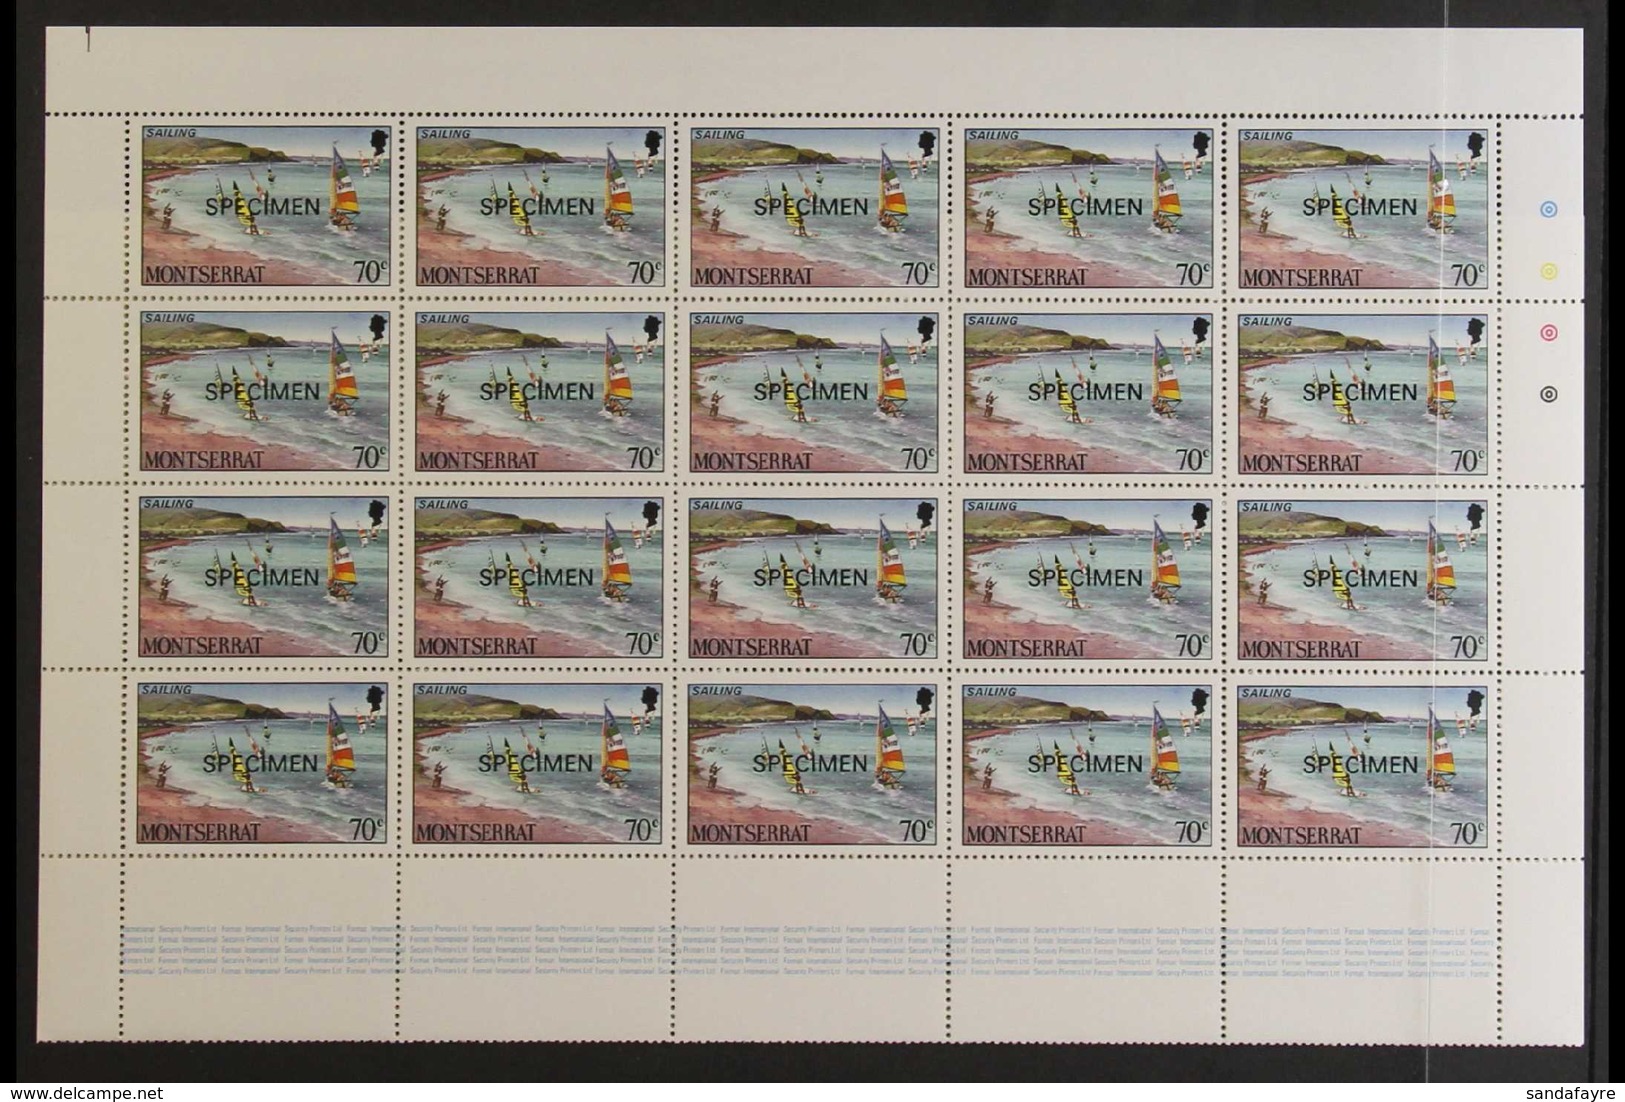 1986 TOURISM COMPLETE SHEETS. Tourism Set, SG 710/13, SPECIMEN Overprinted Complete Sheets Of 40 Stamps. Never Hinged Mi - Montserrat